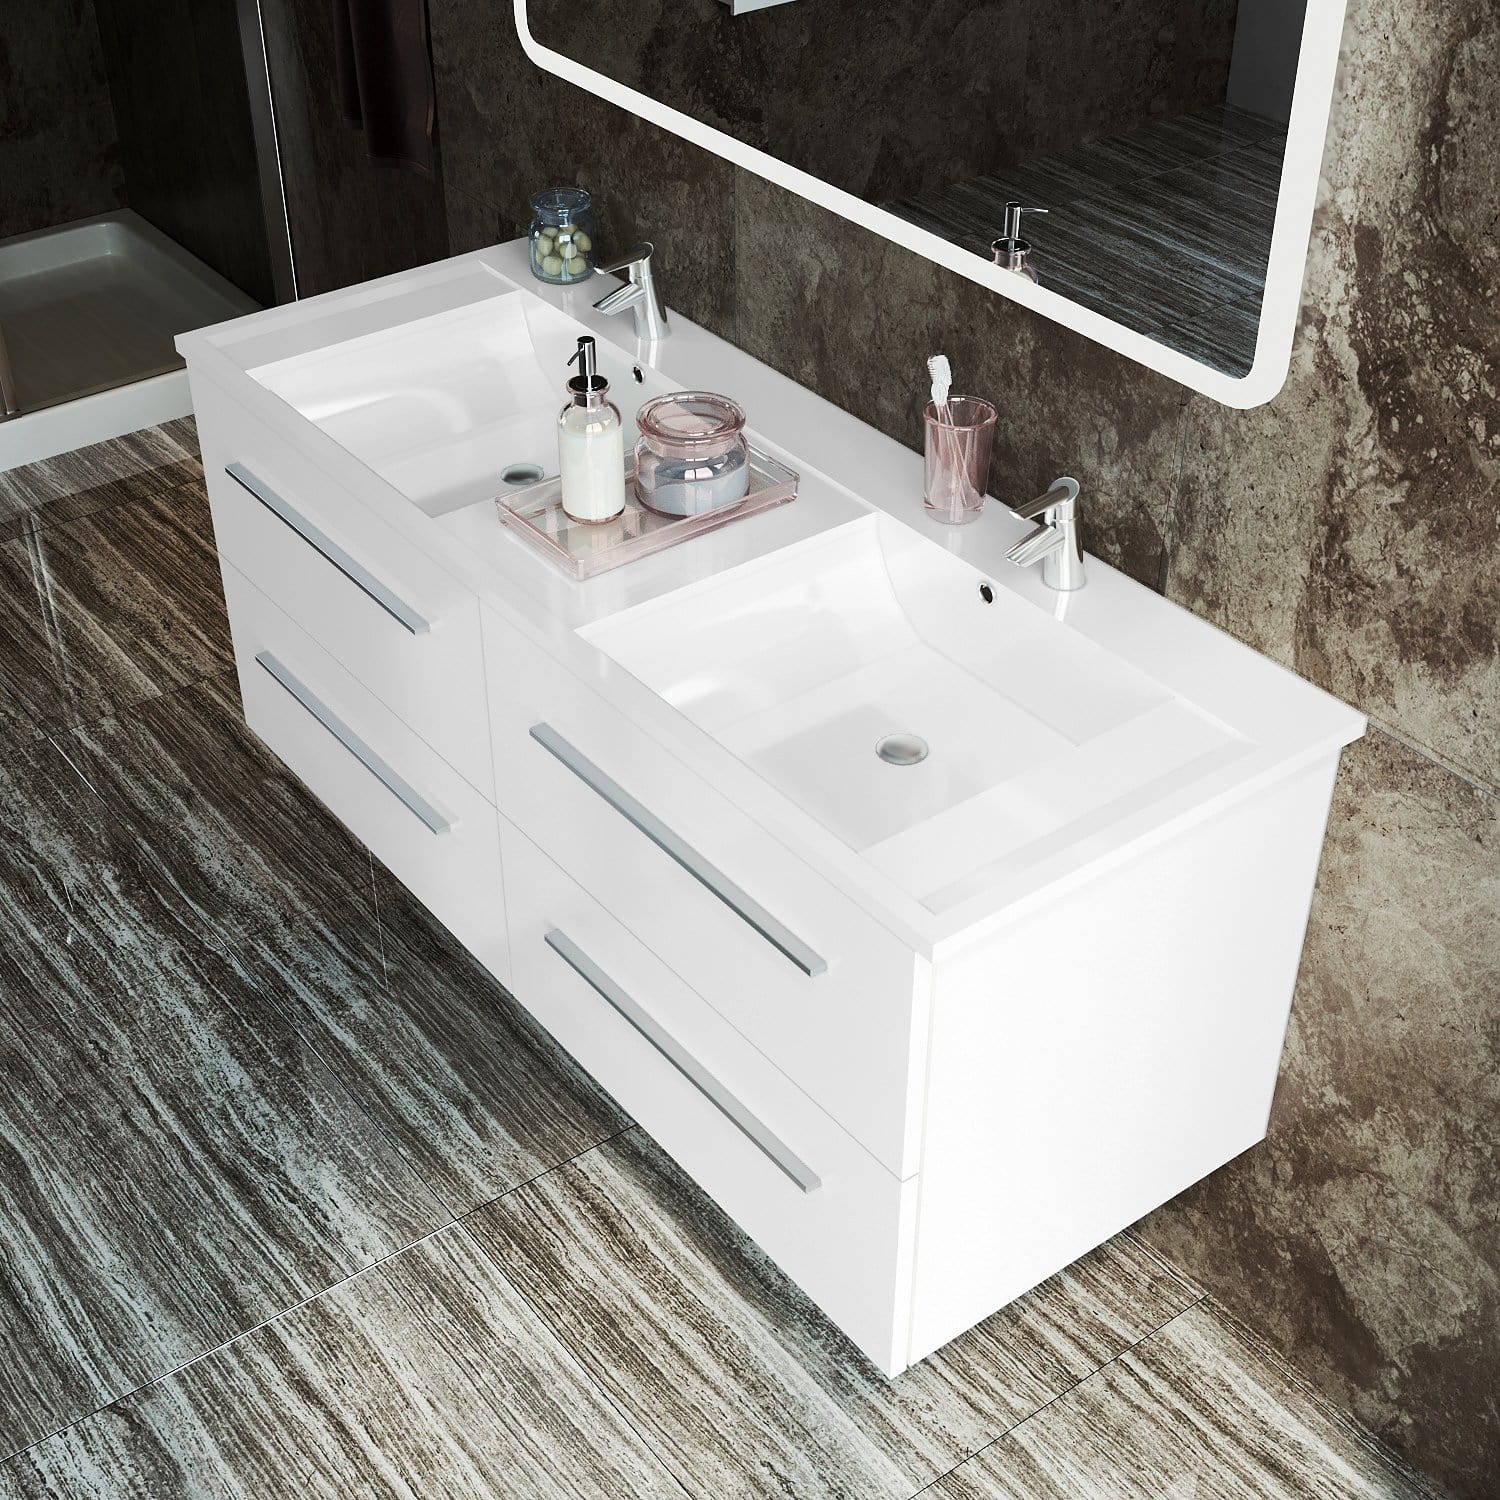 ELEGANT SHOWERS Bathroom Vanity Storage Cabinet Double Basin Sink 1205x465x498mm - Elegantshowers